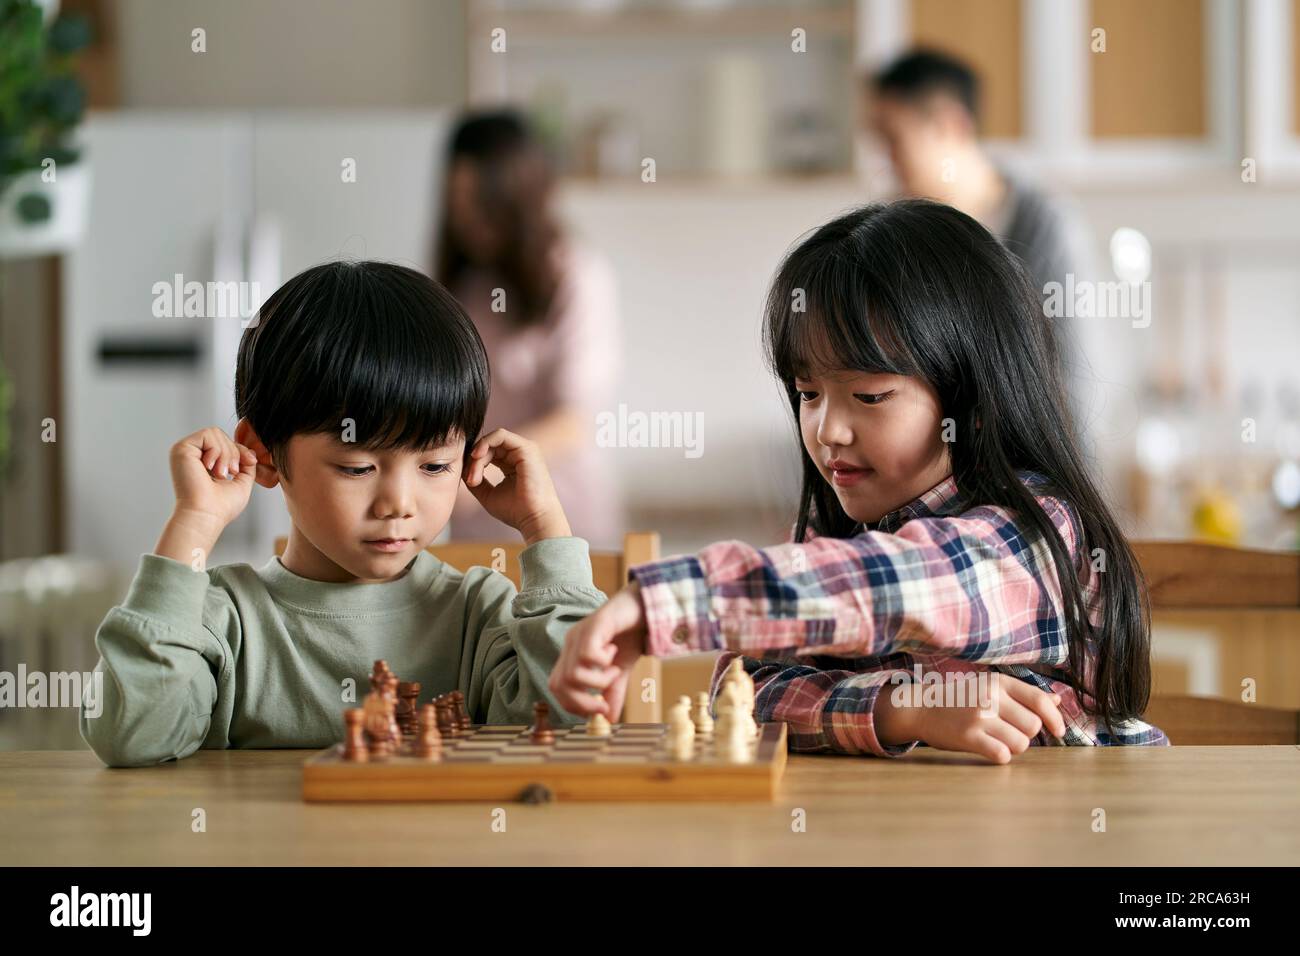 deux enfants asiatiques frère et sœur assis à table à la maison jouant aux échecs Banque D'Images